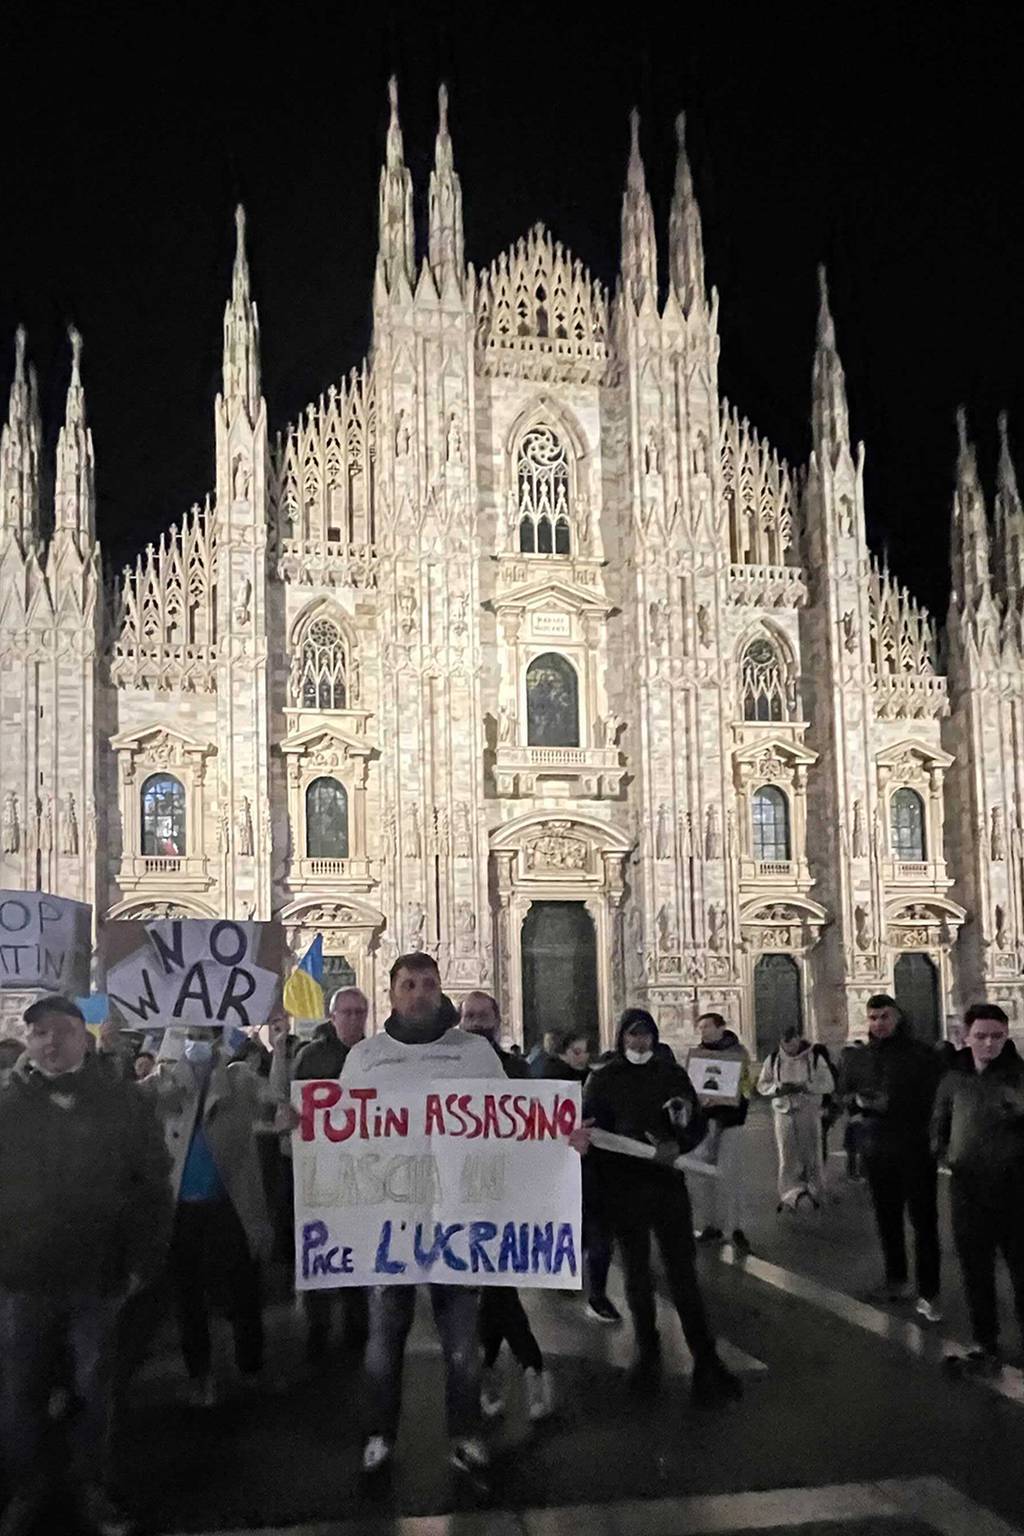 Ukraine supporters outside the Duomo di Milano.